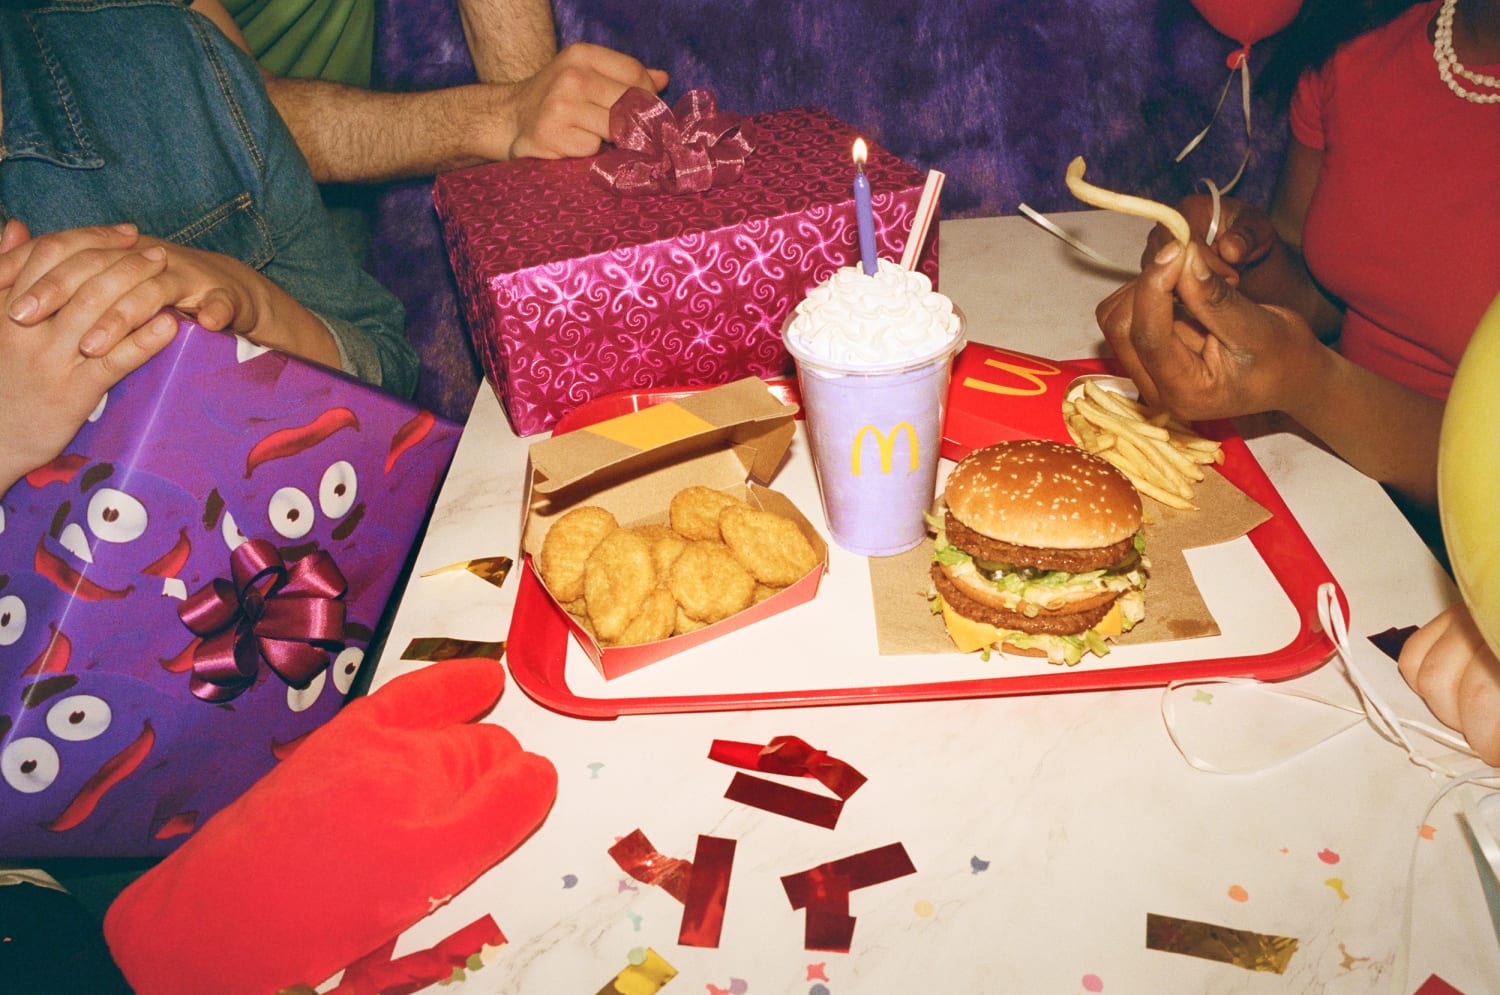 Grimace shakes up TikTok: McDonald's purple birthday bash causes a stir